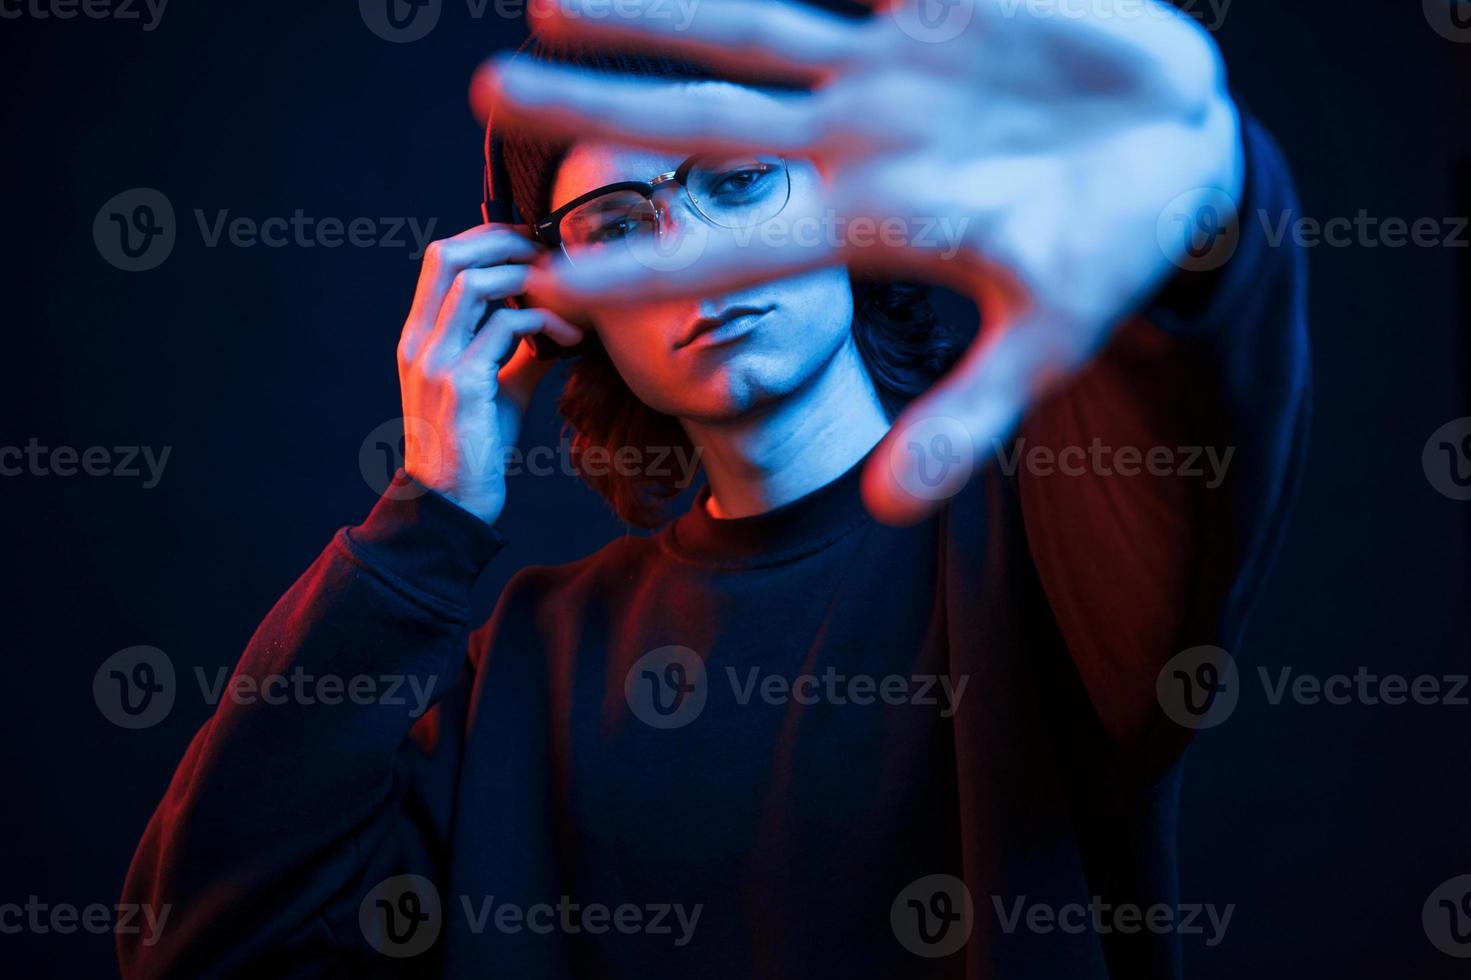 Left hand is blurred. Studio shot in dark studio with neon light. Portrait of serious man photo